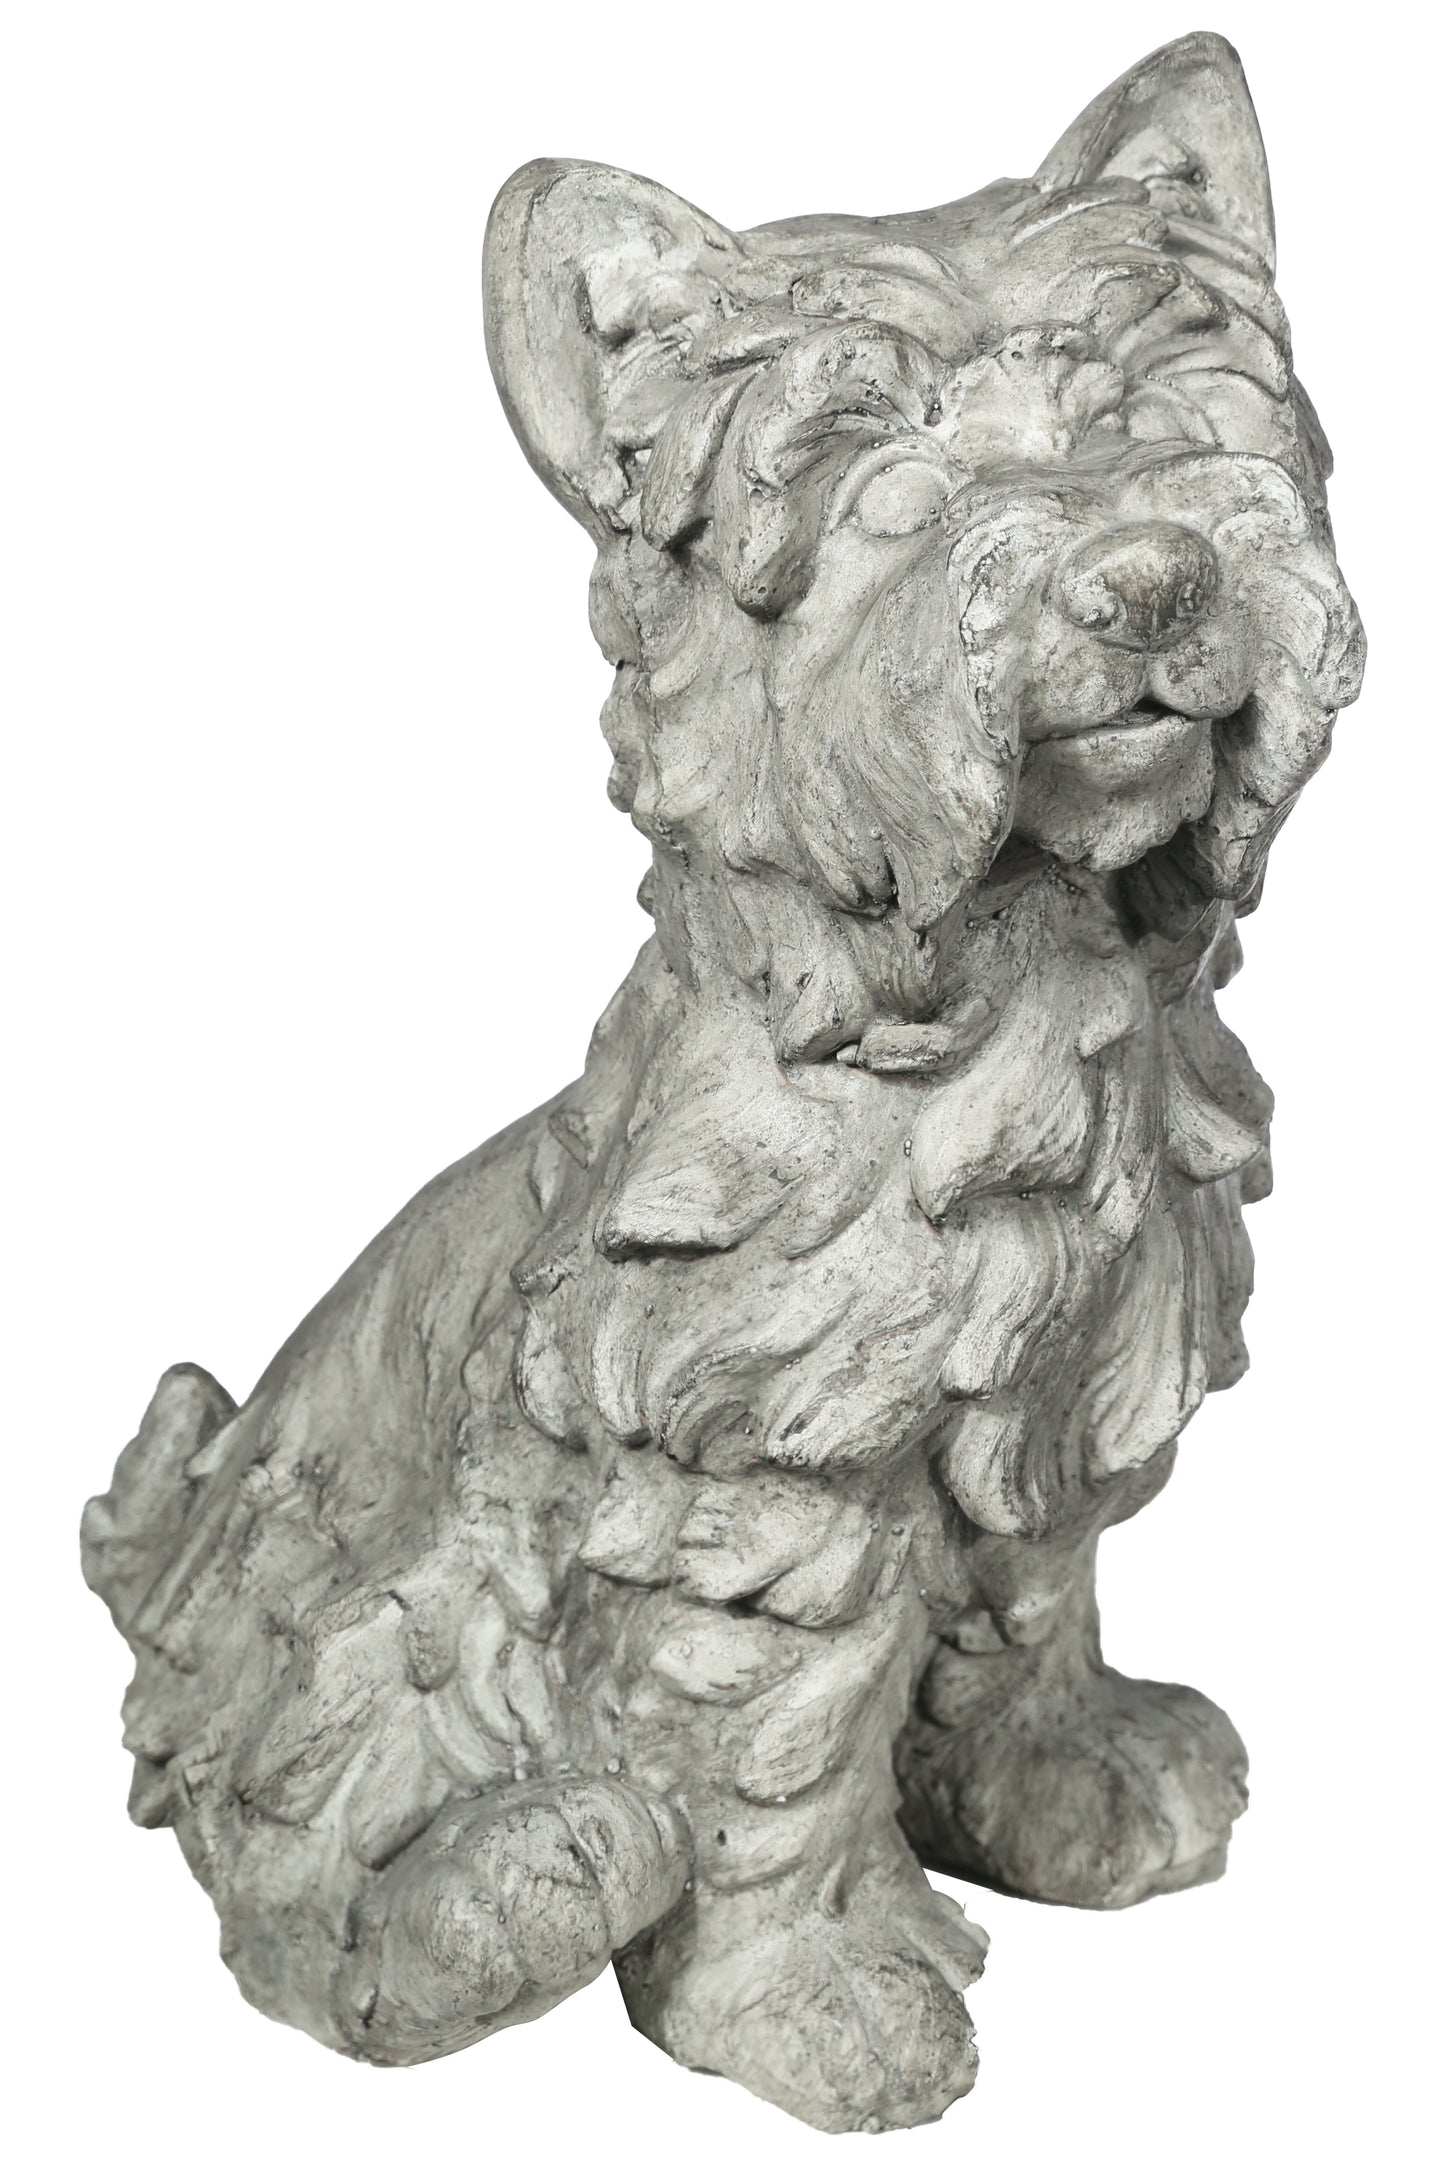 15" Fiberstone Nowwich Terrier Dog Figurine